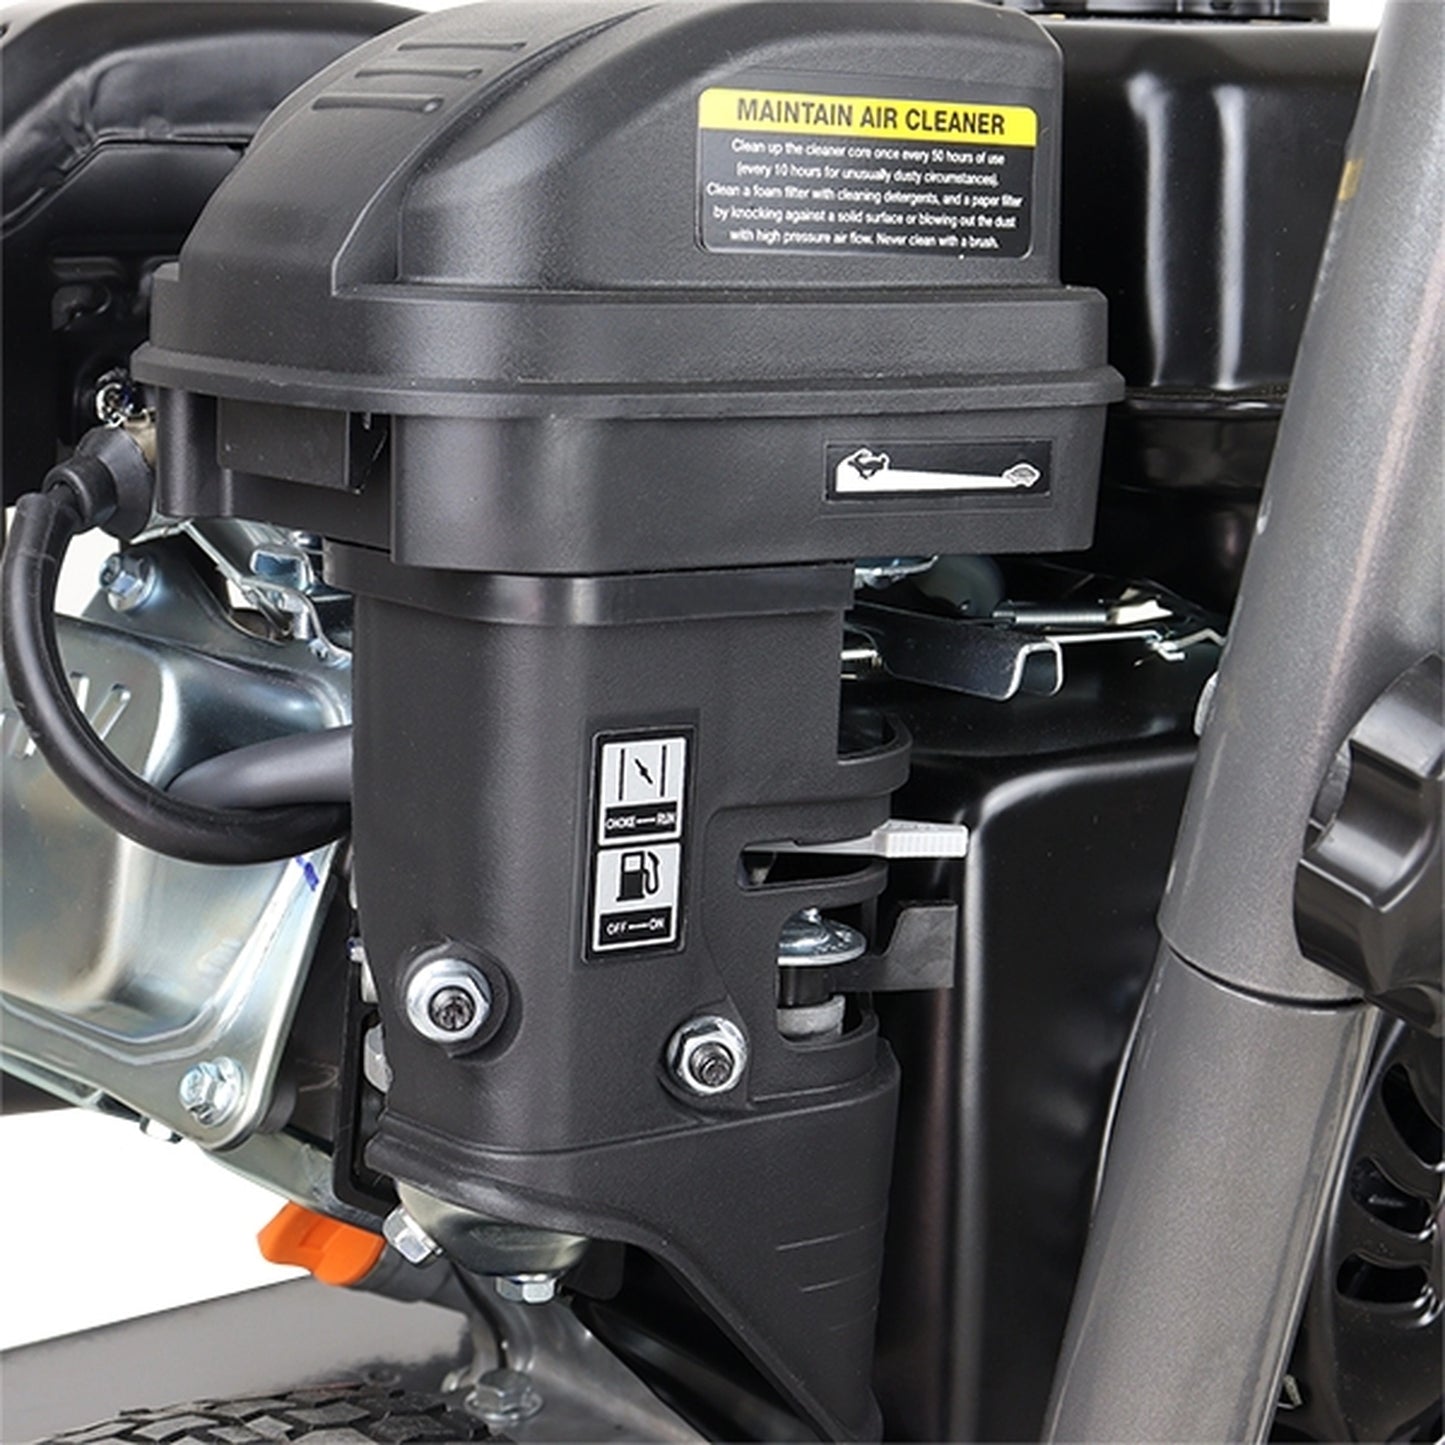 Hyundai HYW3100P2 Petrol Pressure Washer